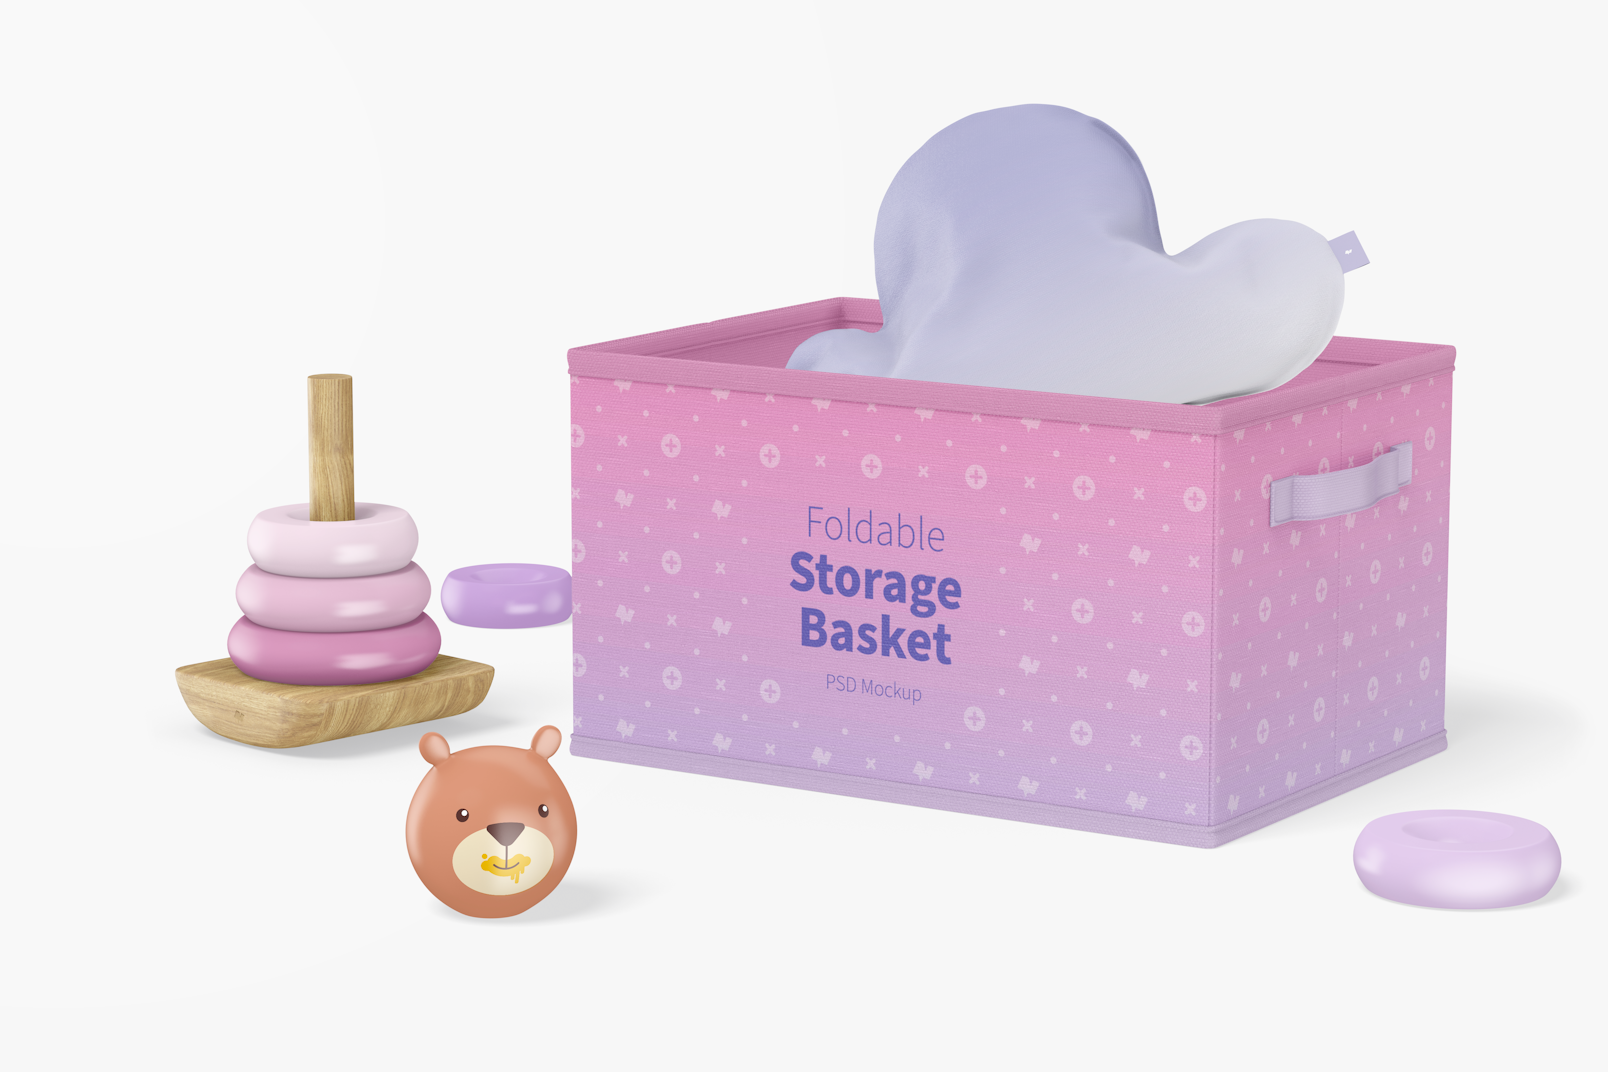 Foldable Storage Basket Mockup, Perspective